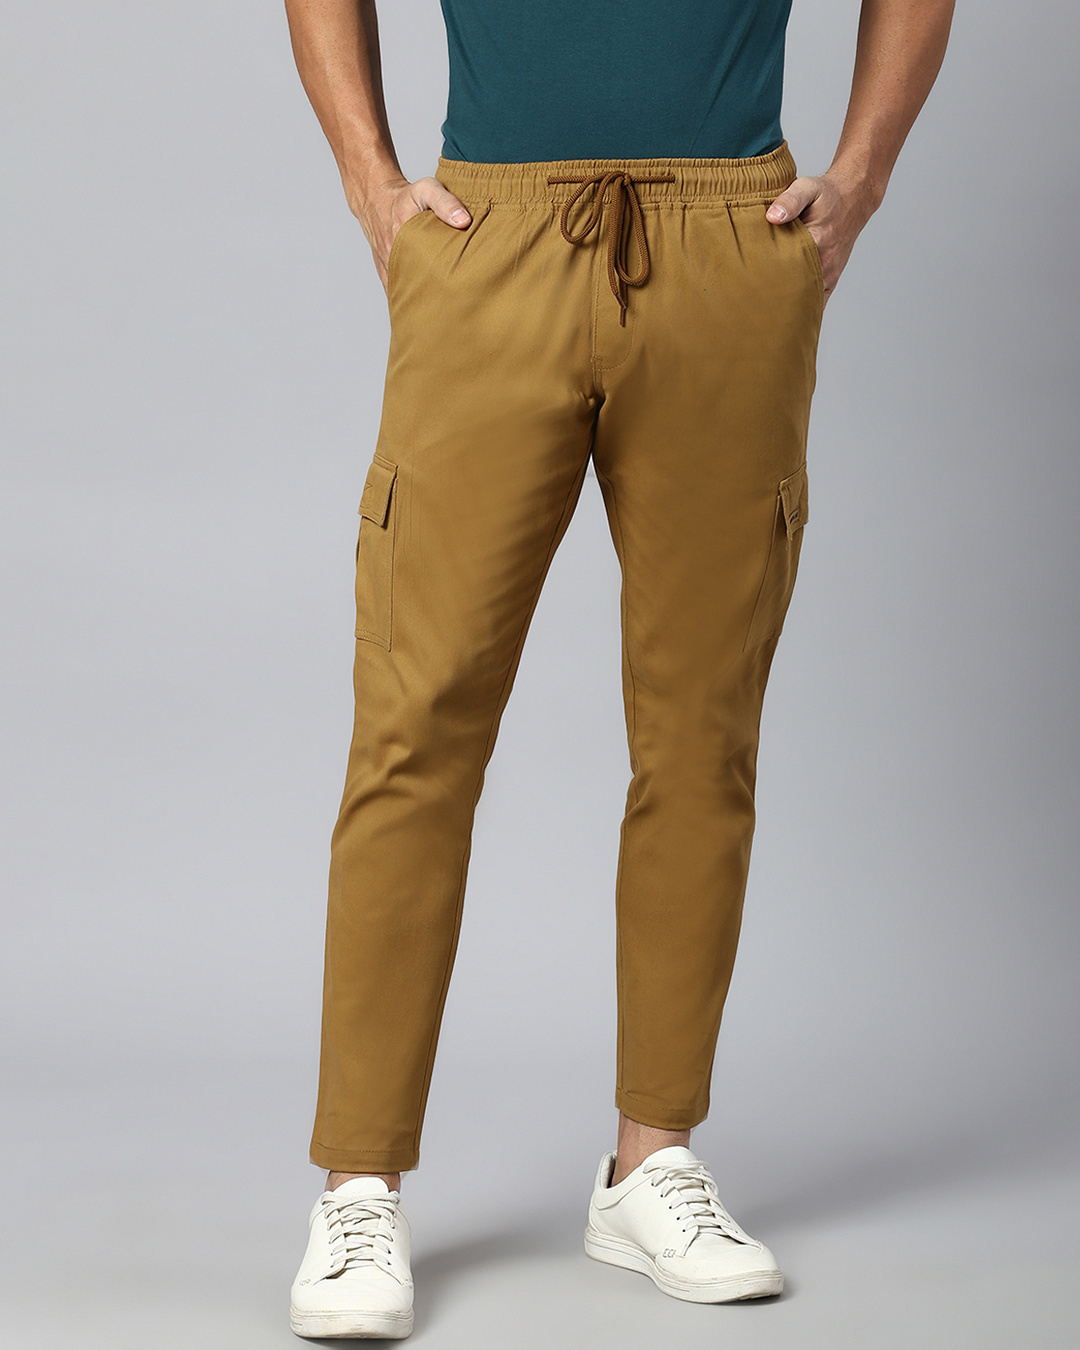 Buy Men's Beige Cargo Trousers for Men Online at Bewakoof